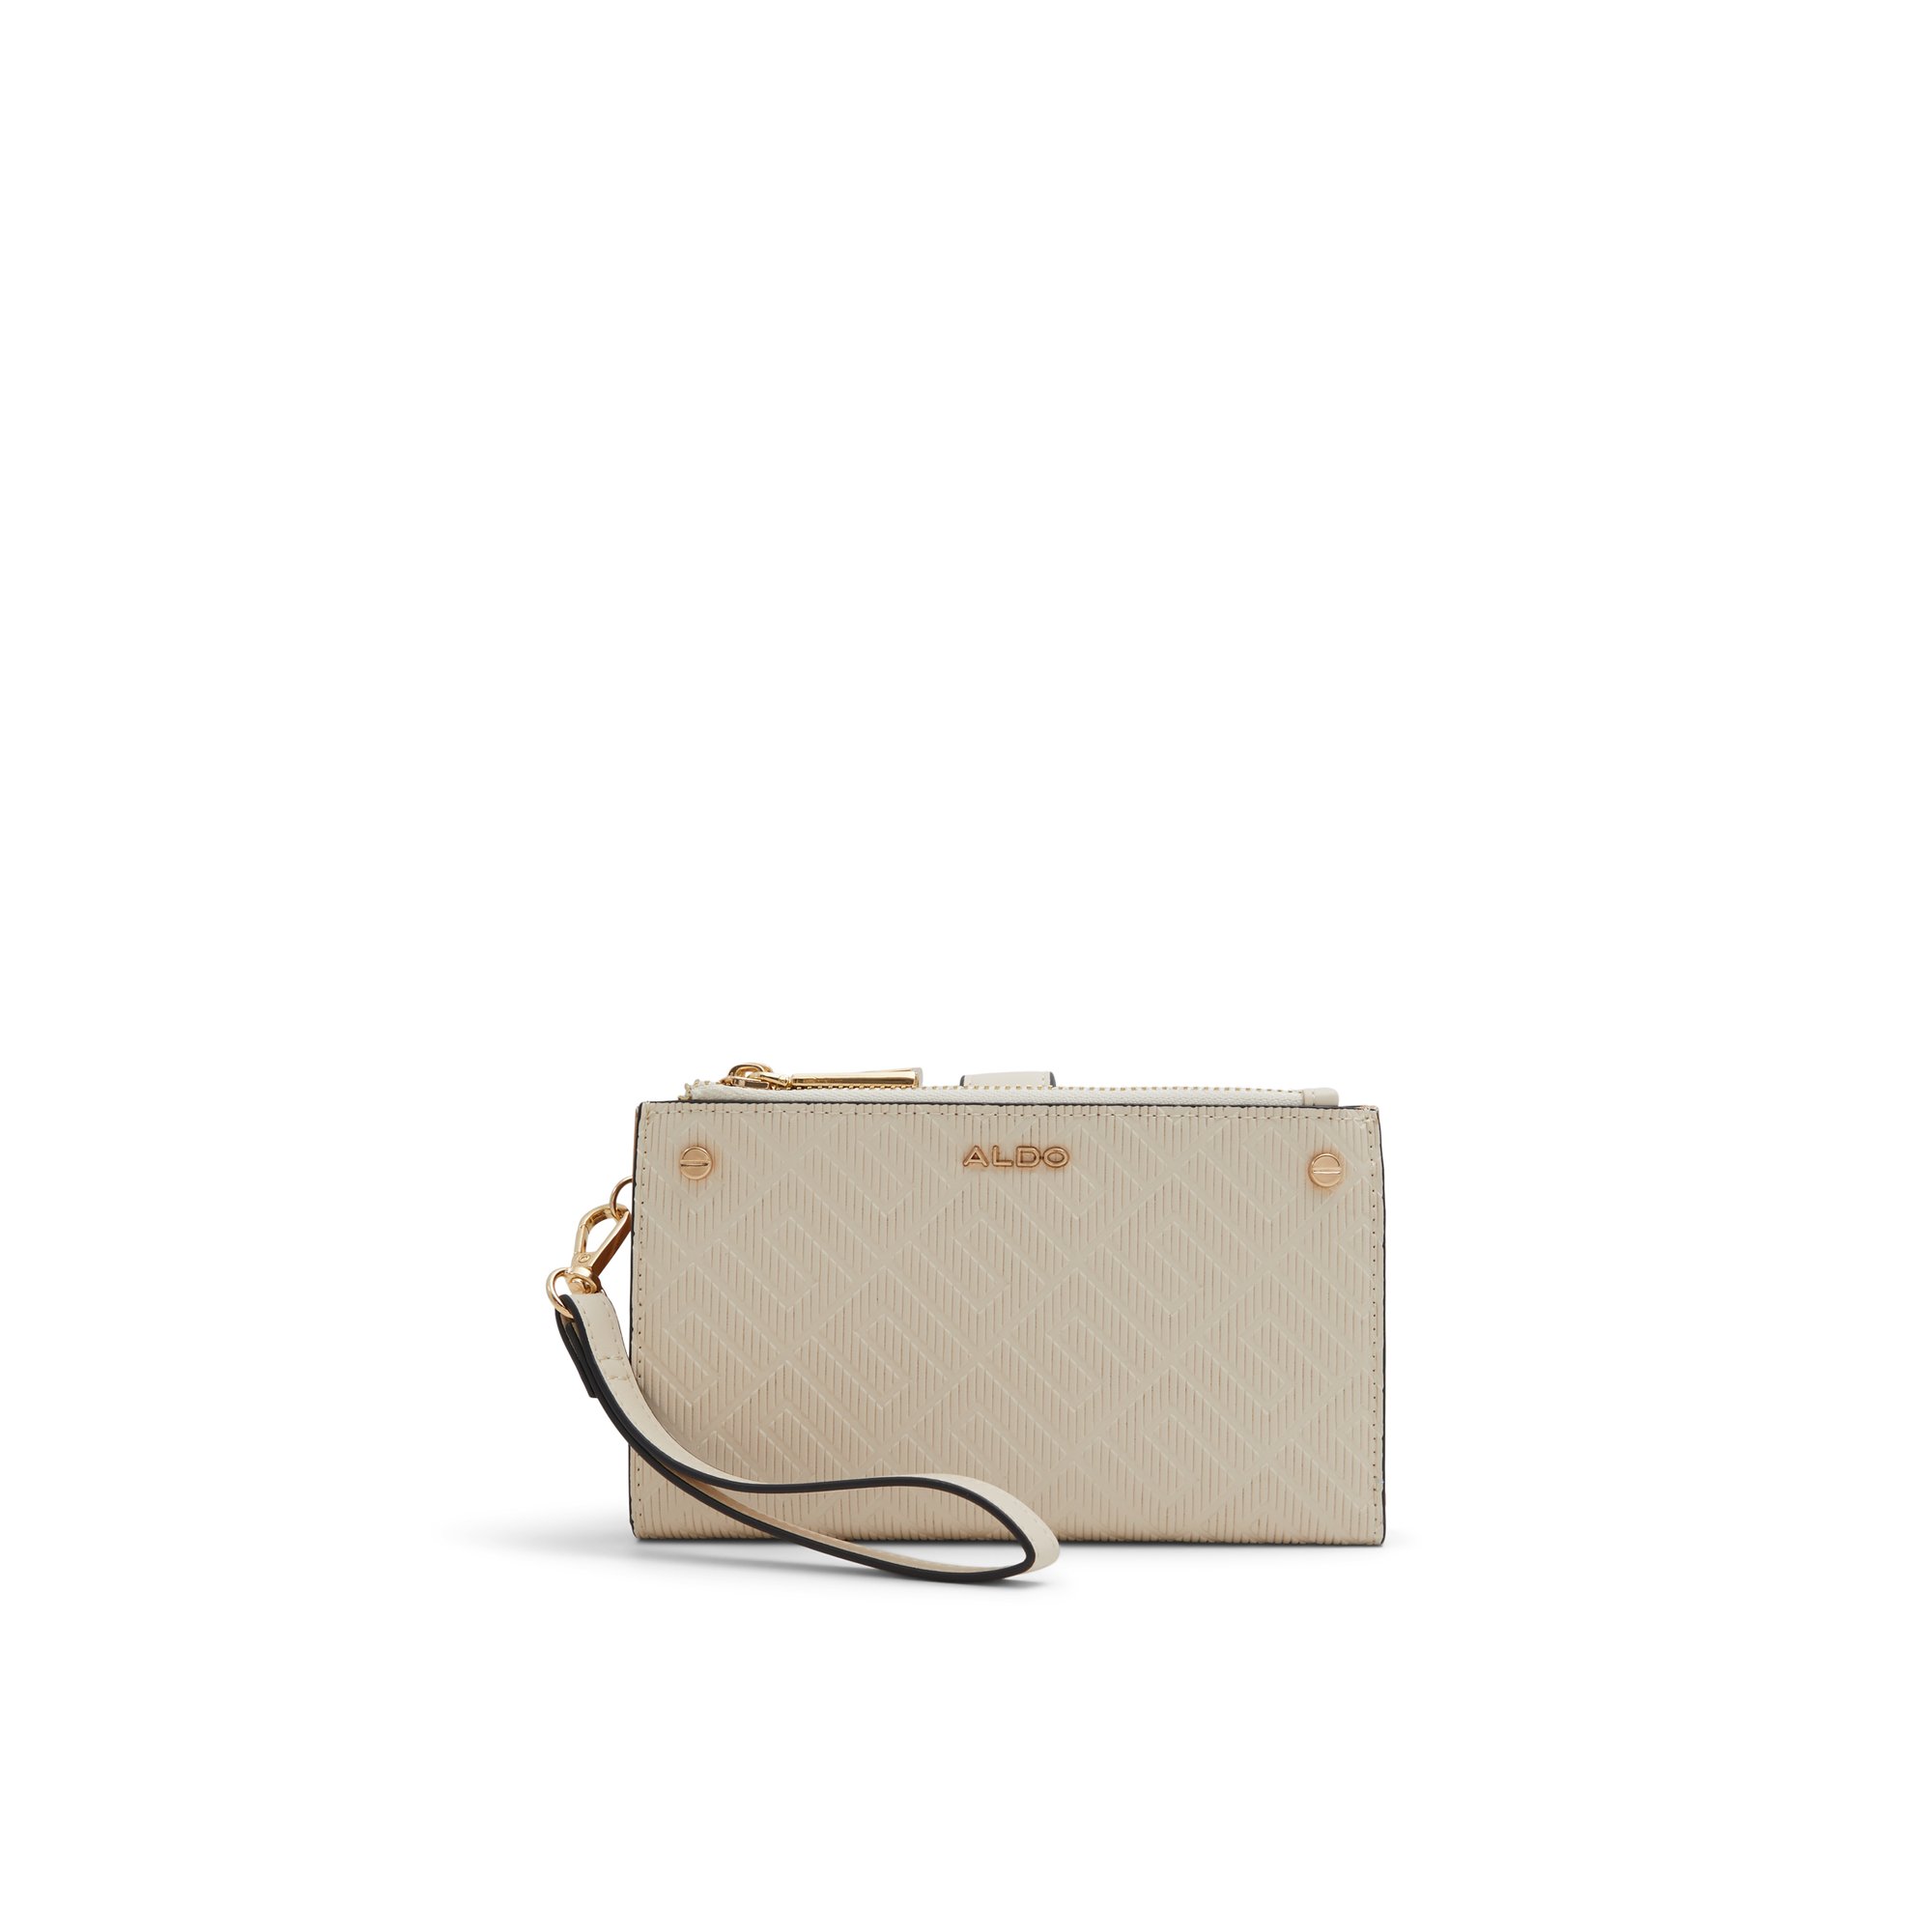 ALDO Illori - Women's Handbags Wallets